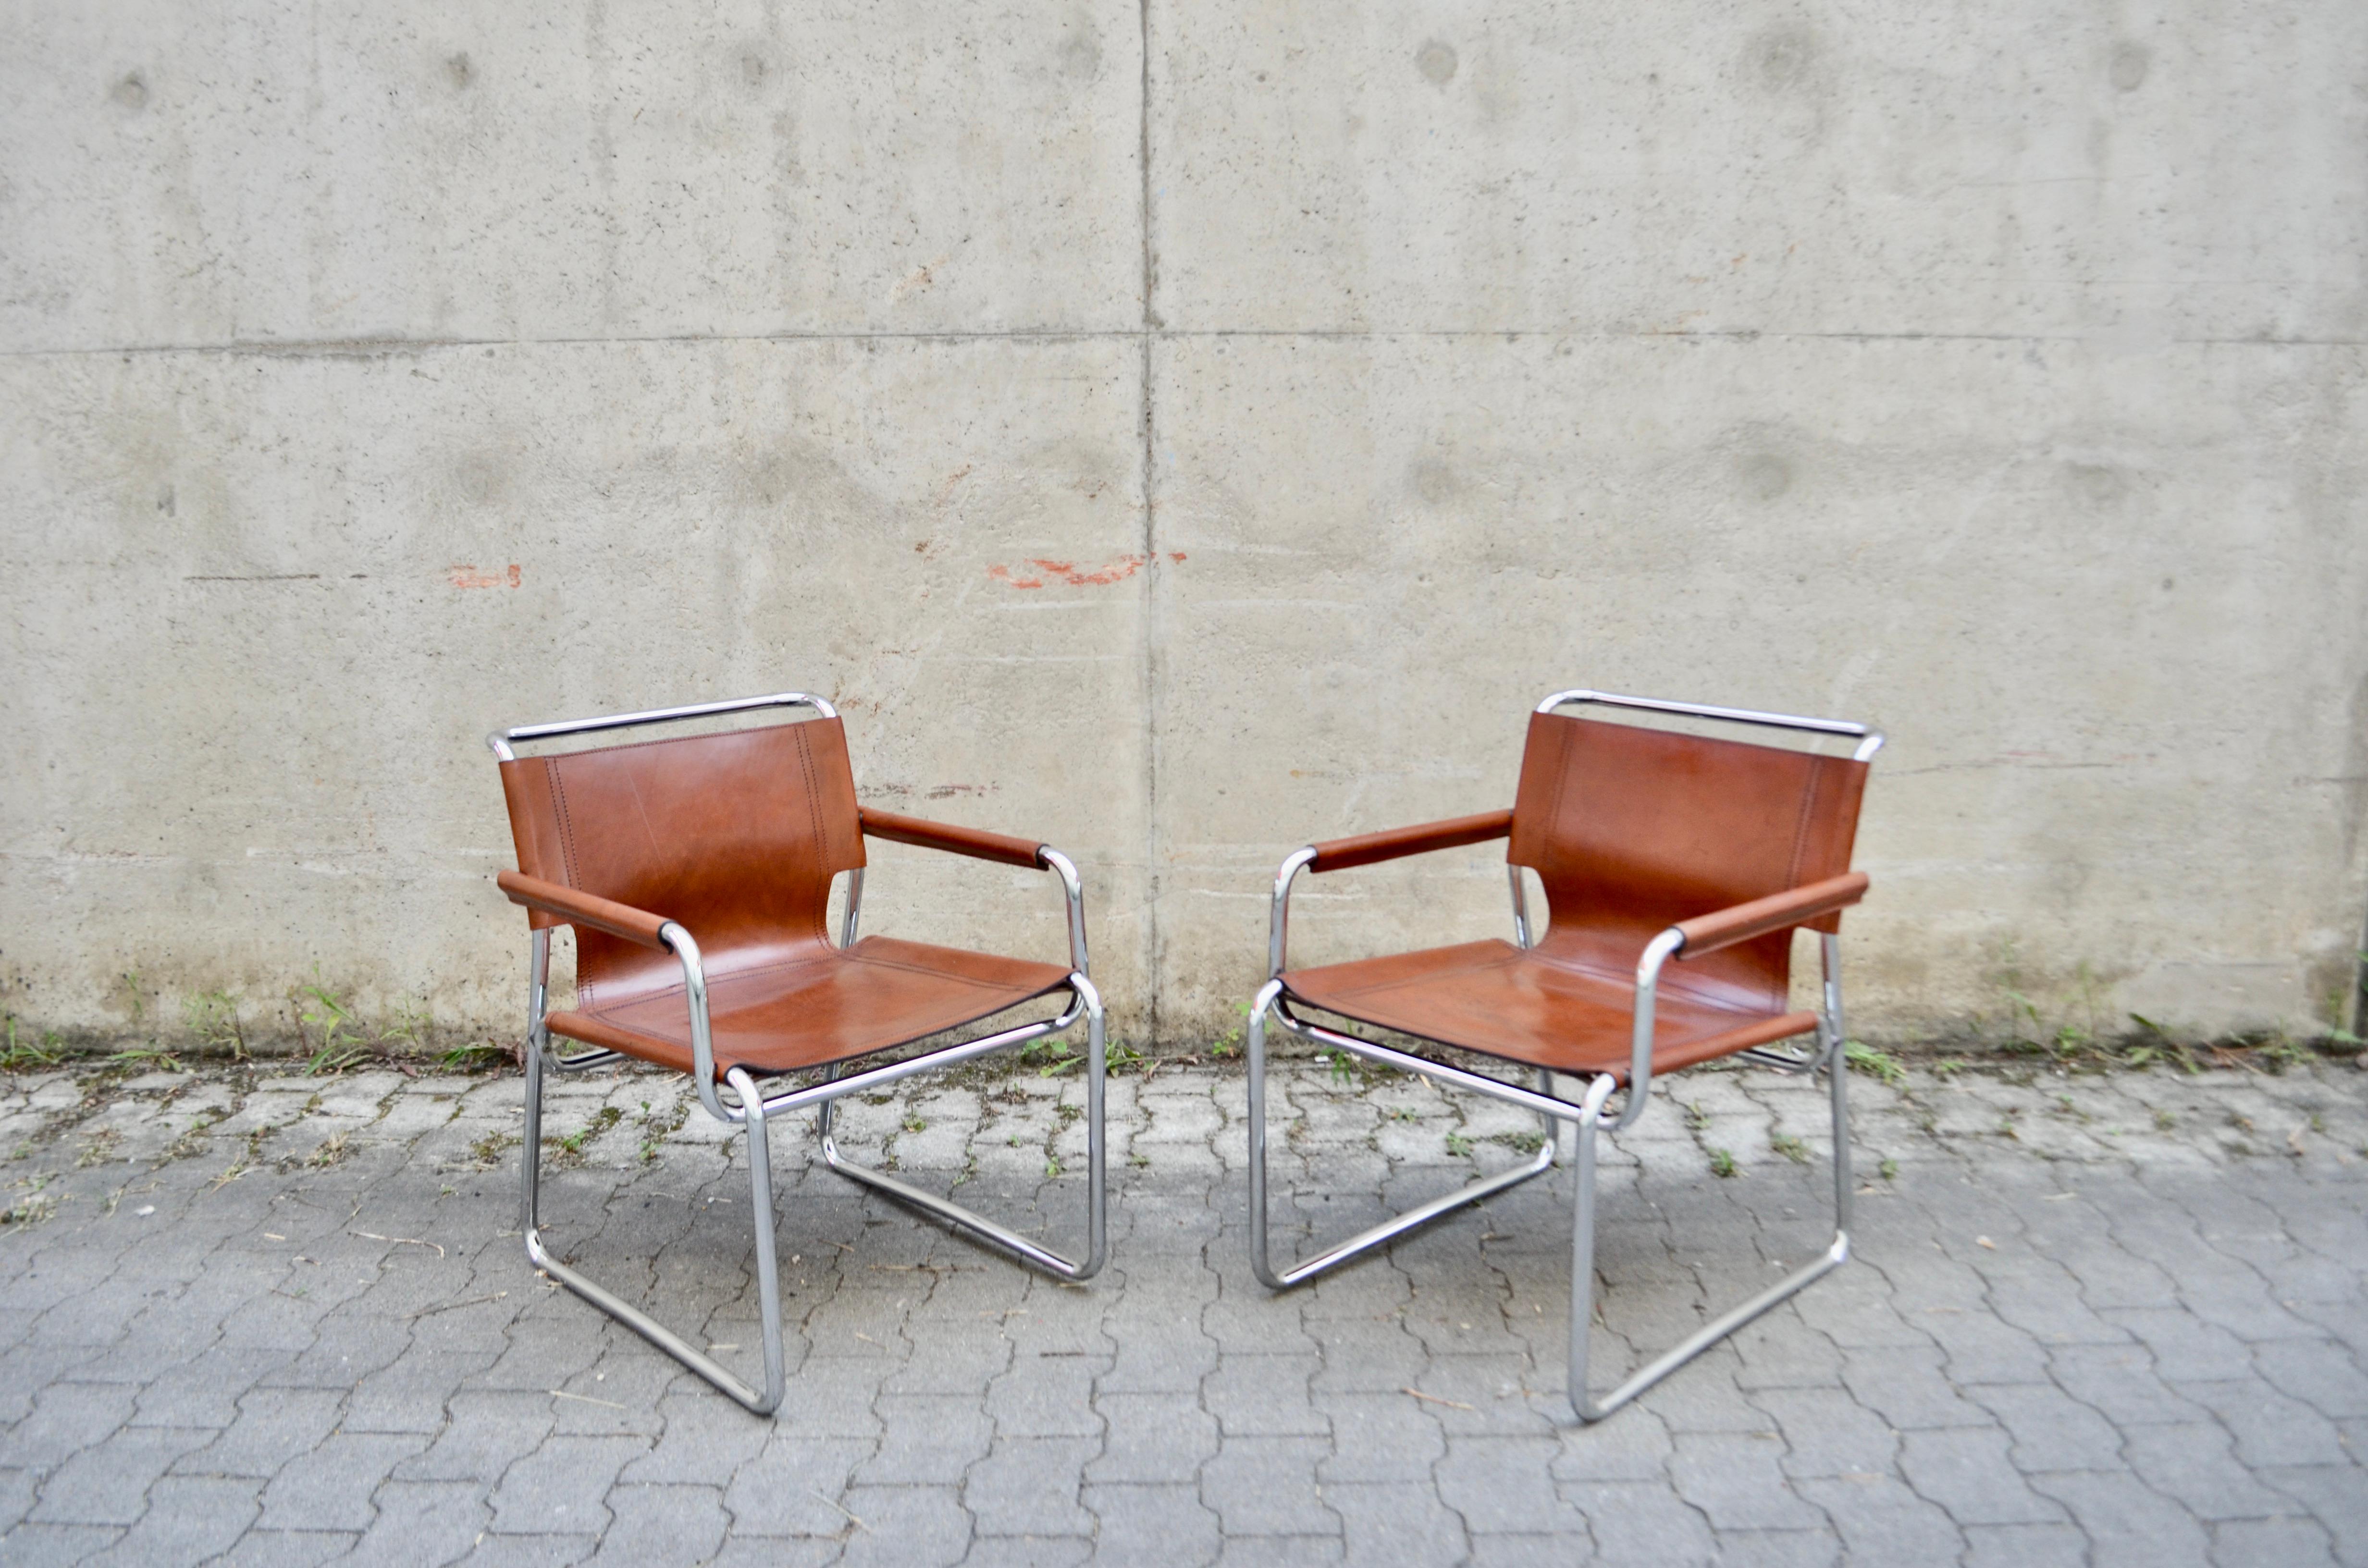 Ces chaises longues vintage sont des classiques italiens rares.
À la manière de Marcel Breuer, ces chaises sont fortement inspirées du mouvement Bauhaus.
Il s'agit d'un cuir de selle épais qui a acquis au fil des ans une magnifique patine bien